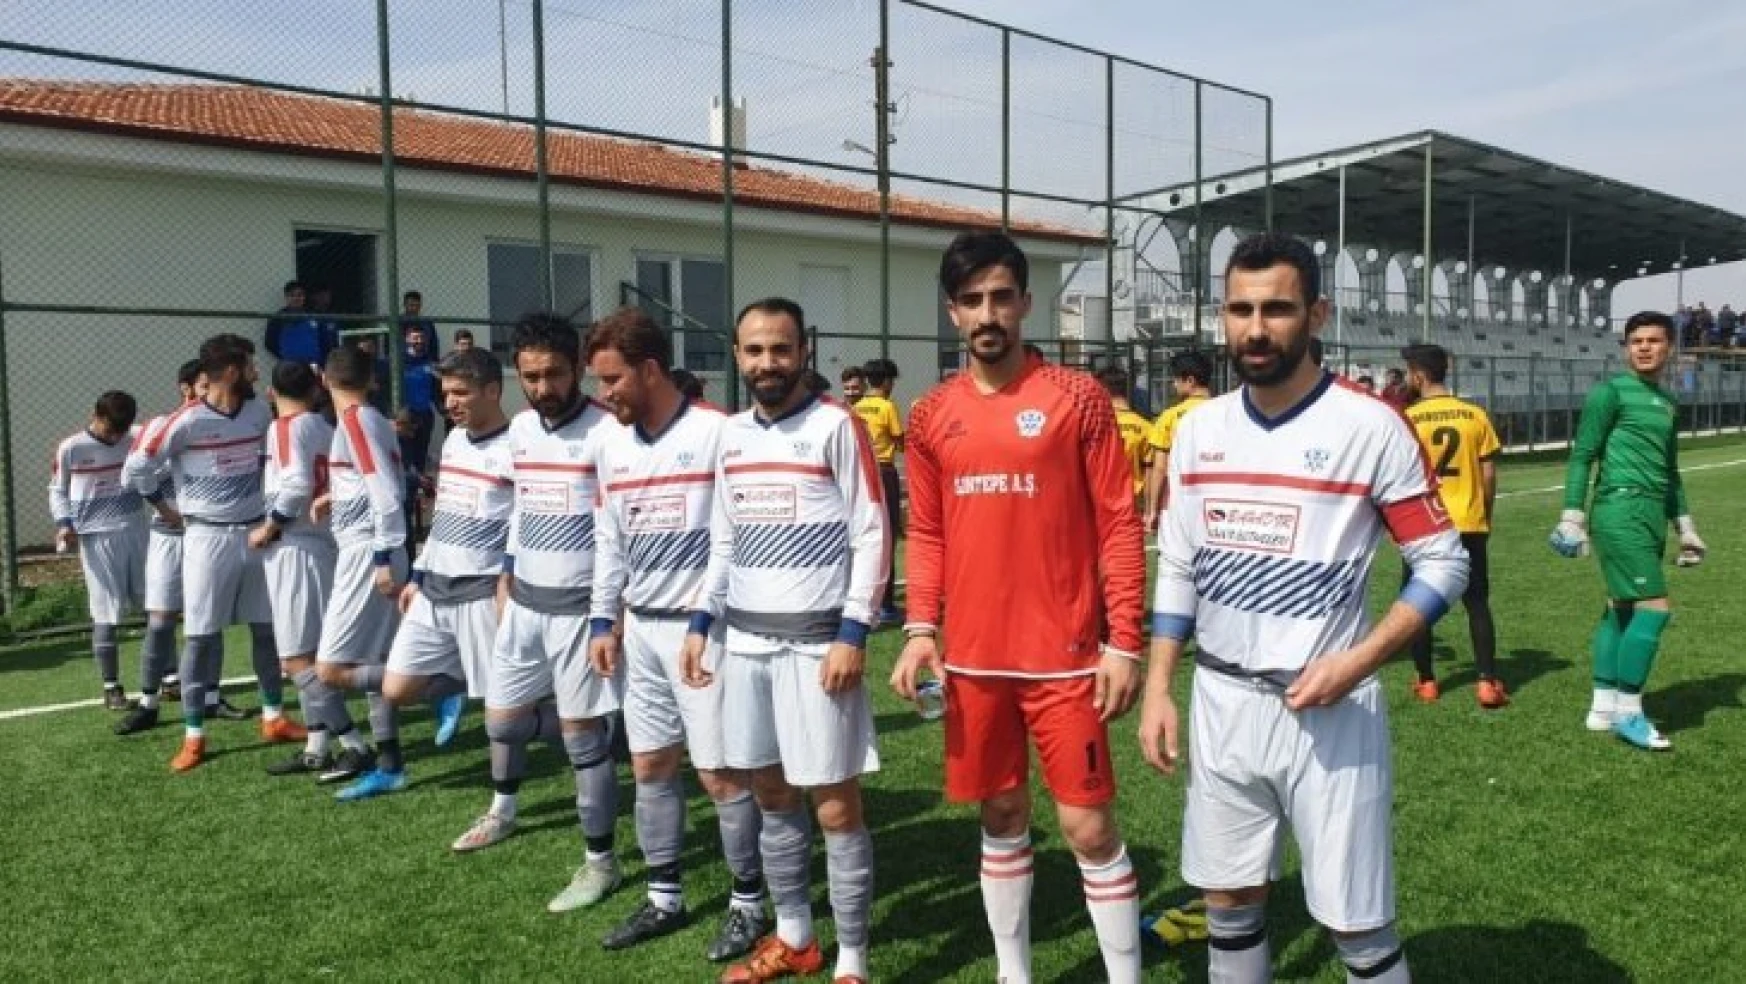 Arguvan Belediyespor Orduzuspor'u 2-0 mağlup etti